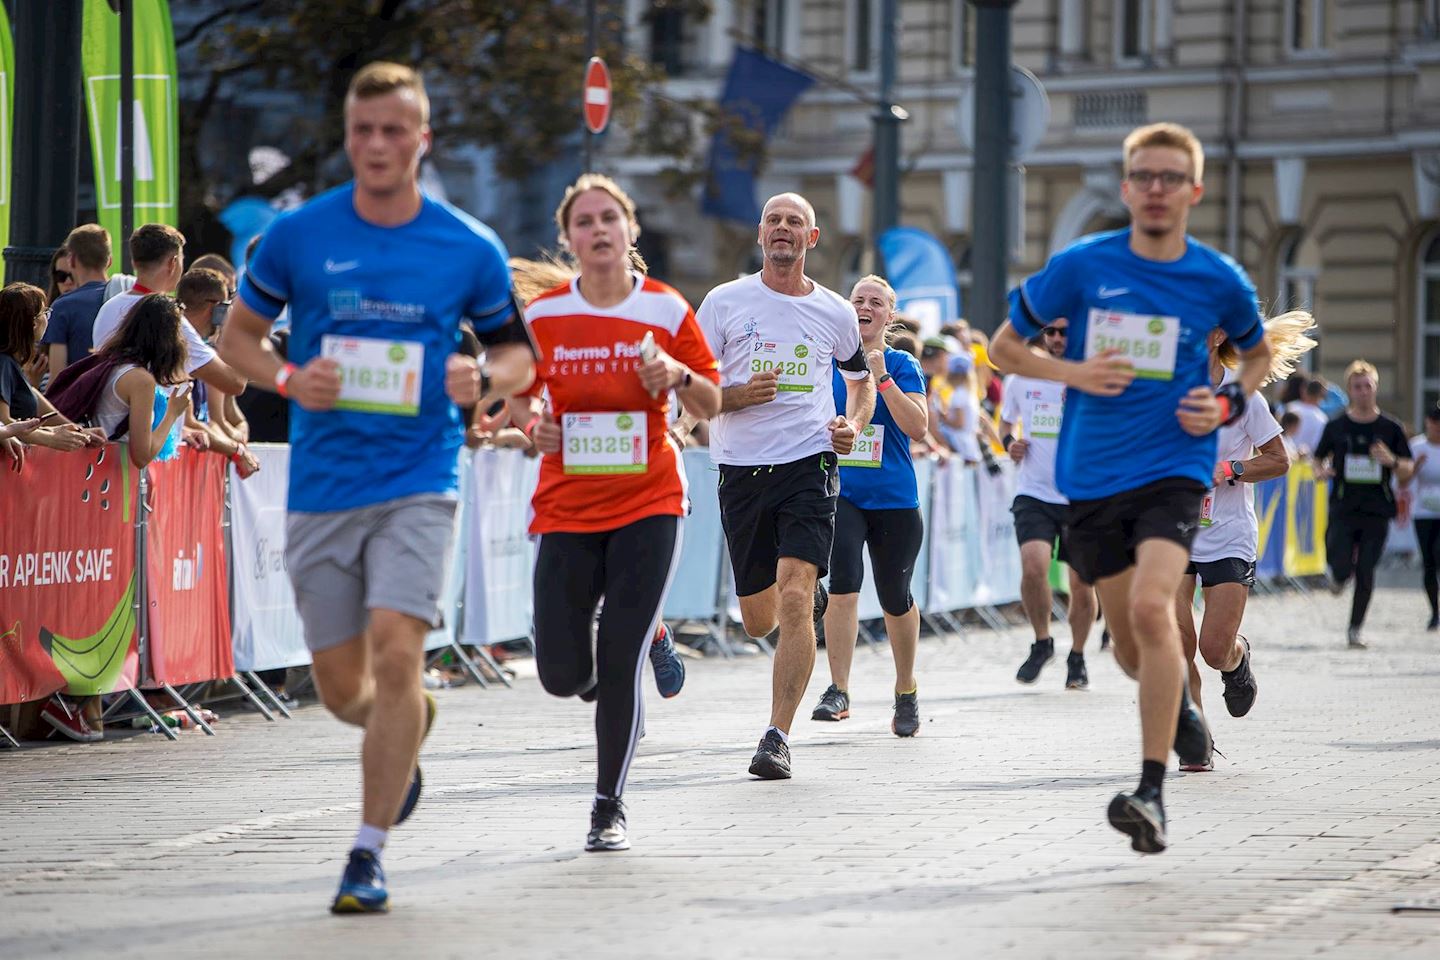 vilnius marathon